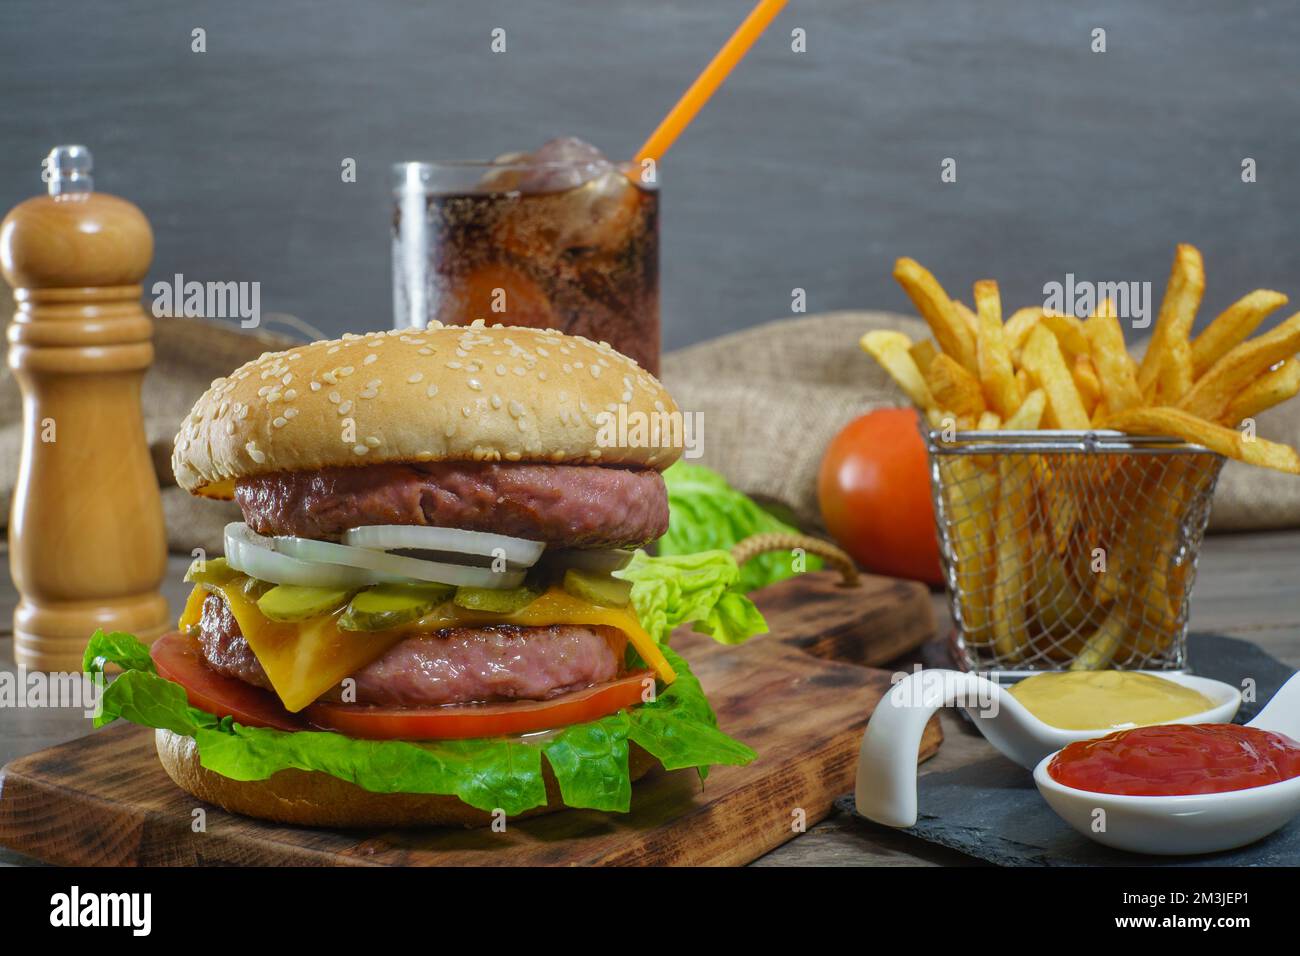 hamburger complet avec deux viandes, sauces, frites et soda au cola. Banque D'Images